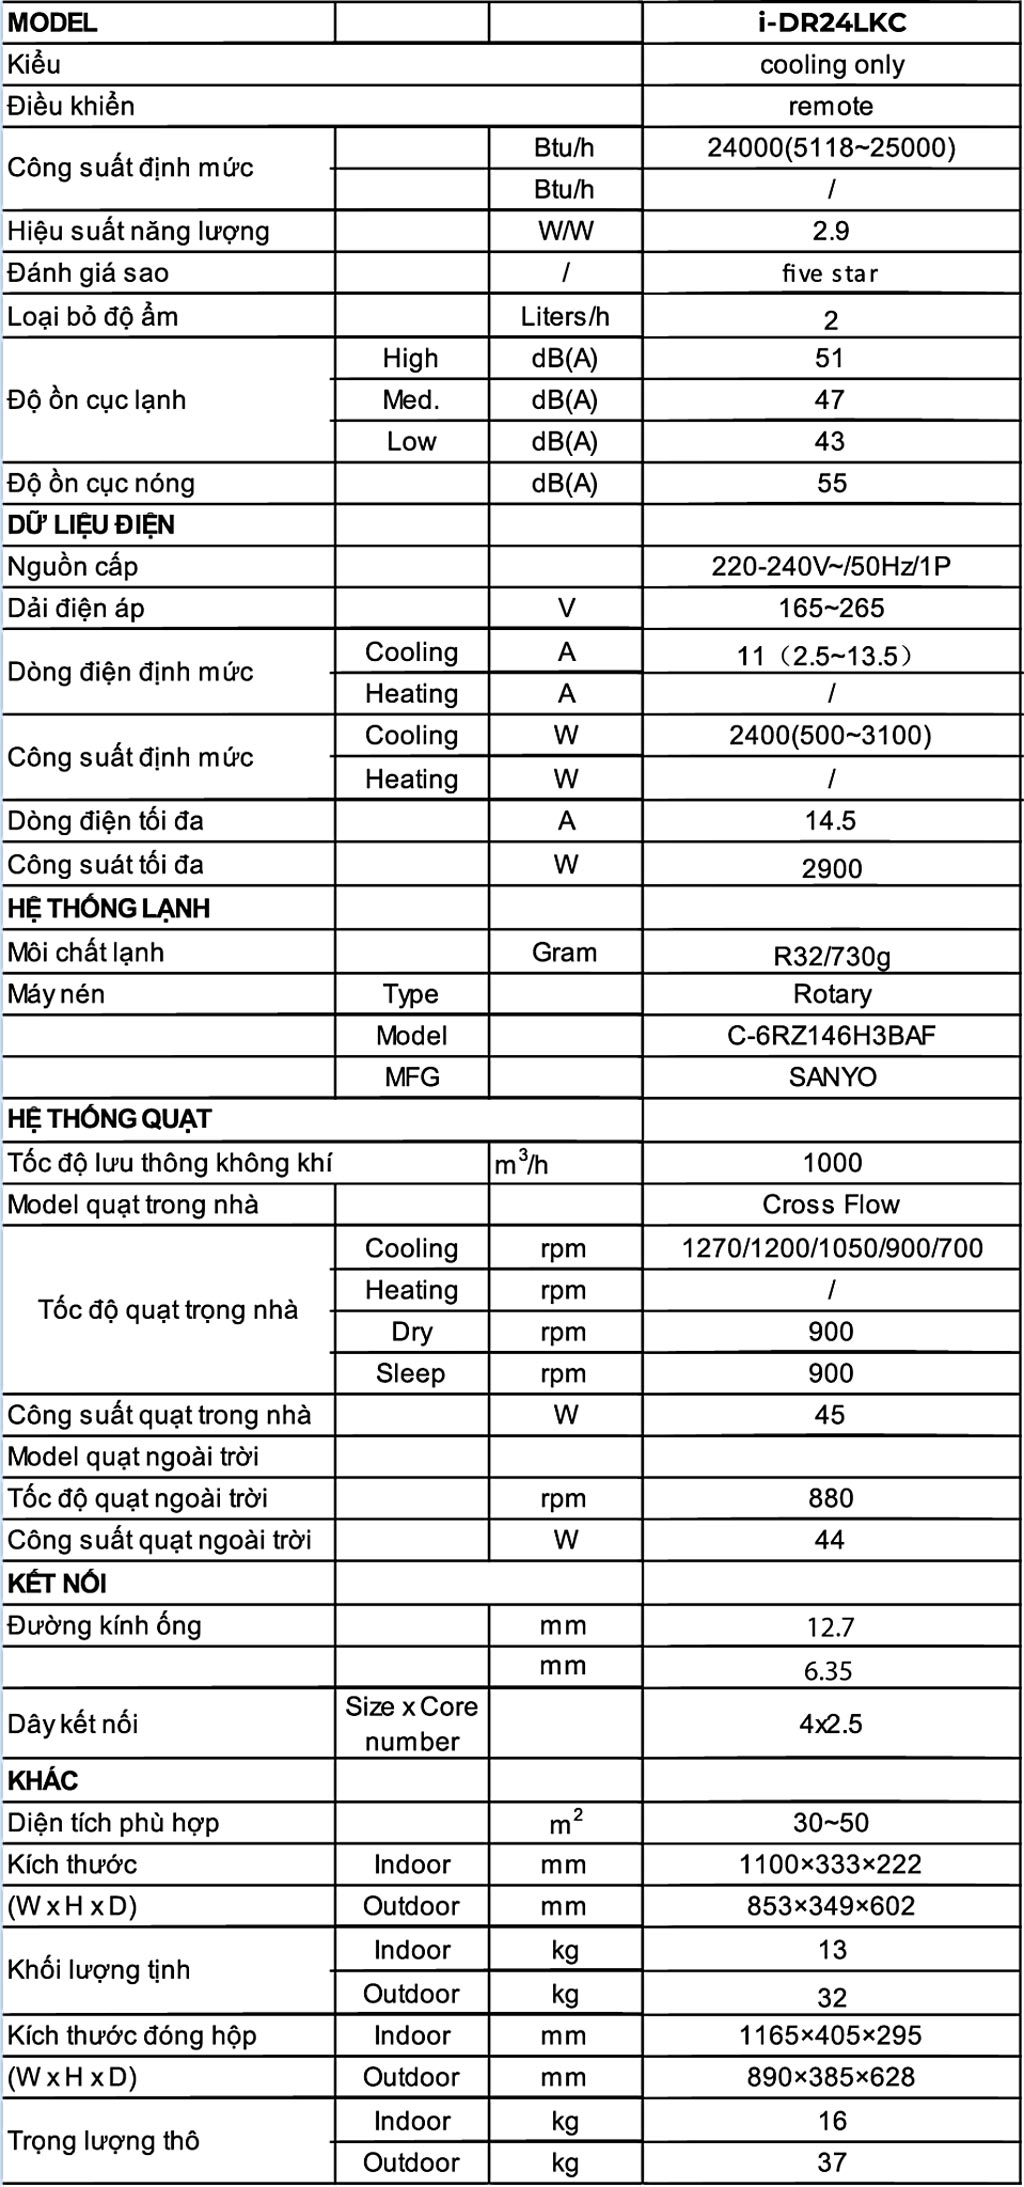 thong-so-may-lanh-treo-tuong-dairry-inverter-2-5hp-i-dr24lkc